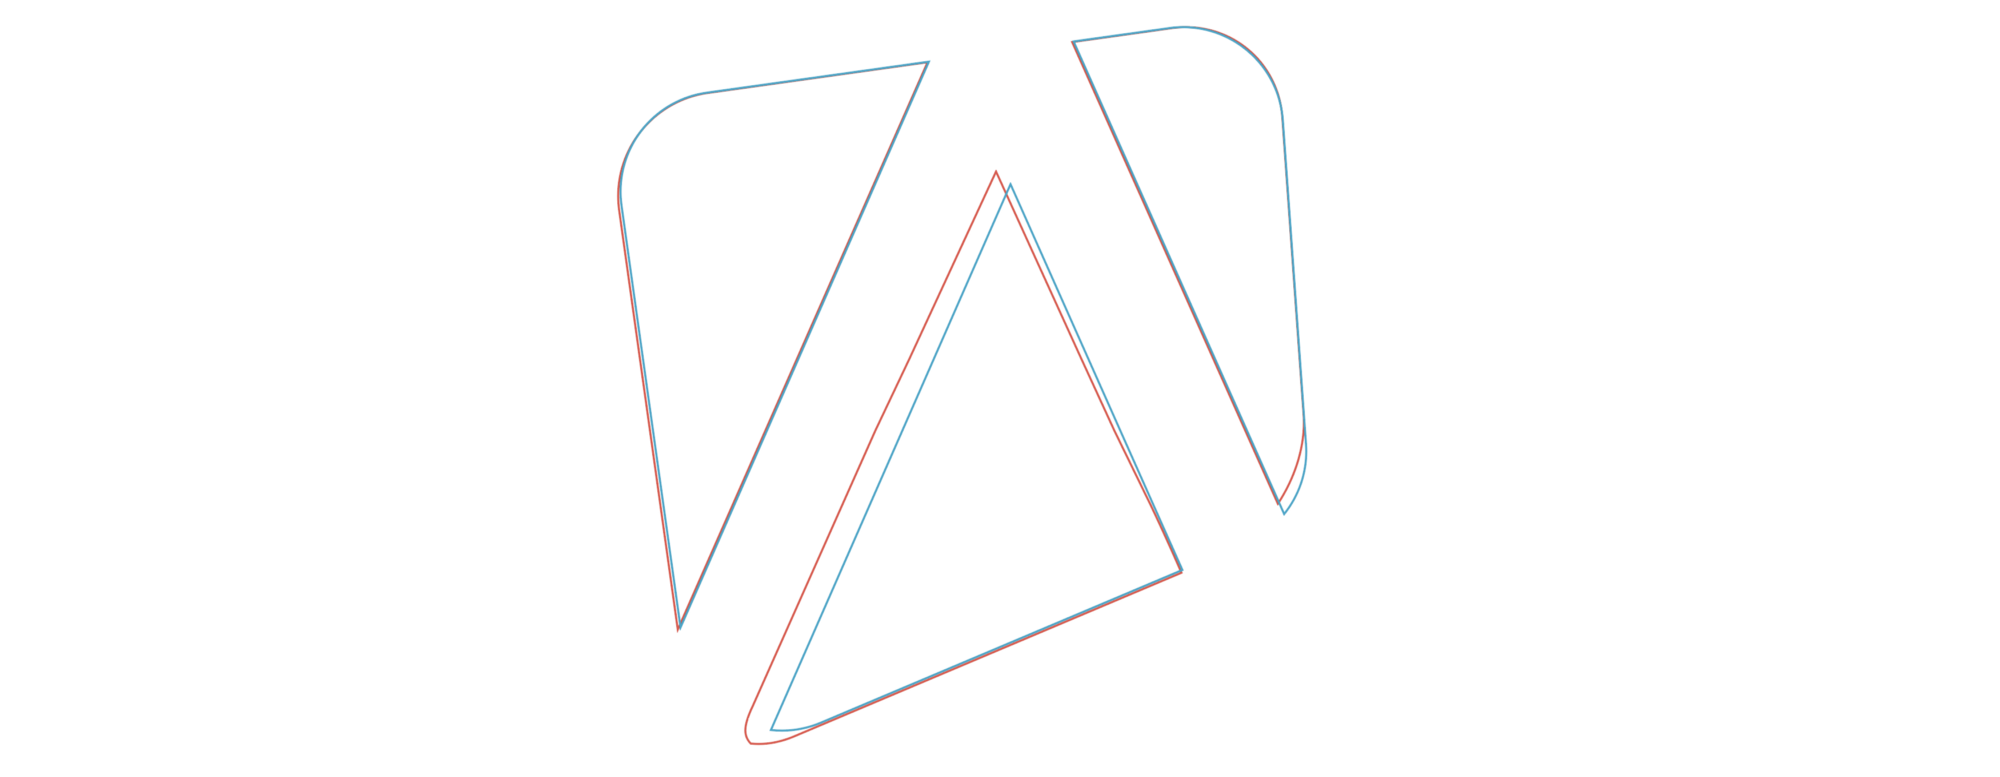 new Apify logo sketch